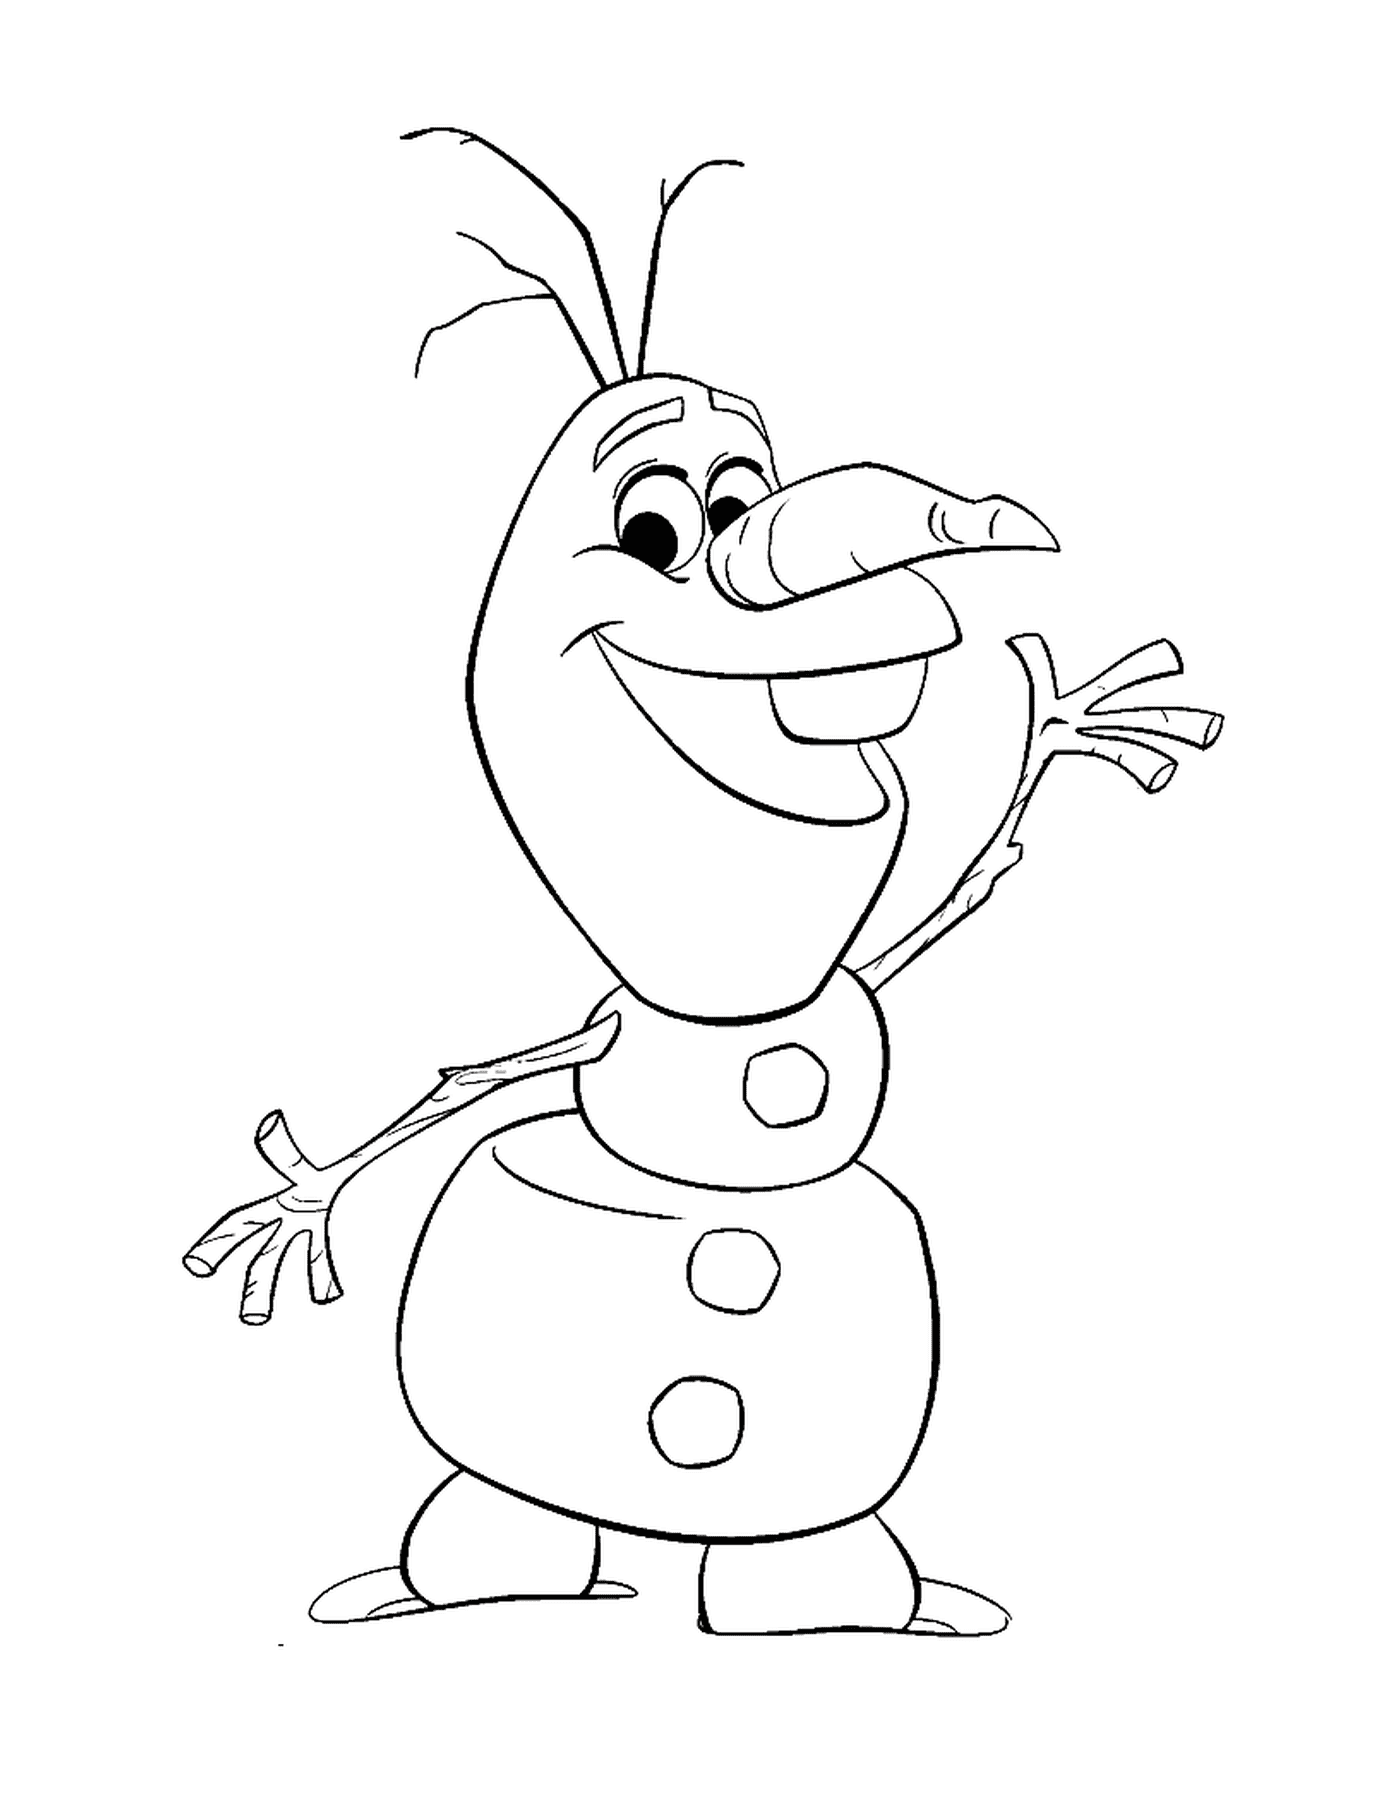   Olaf dessin animé mignon 